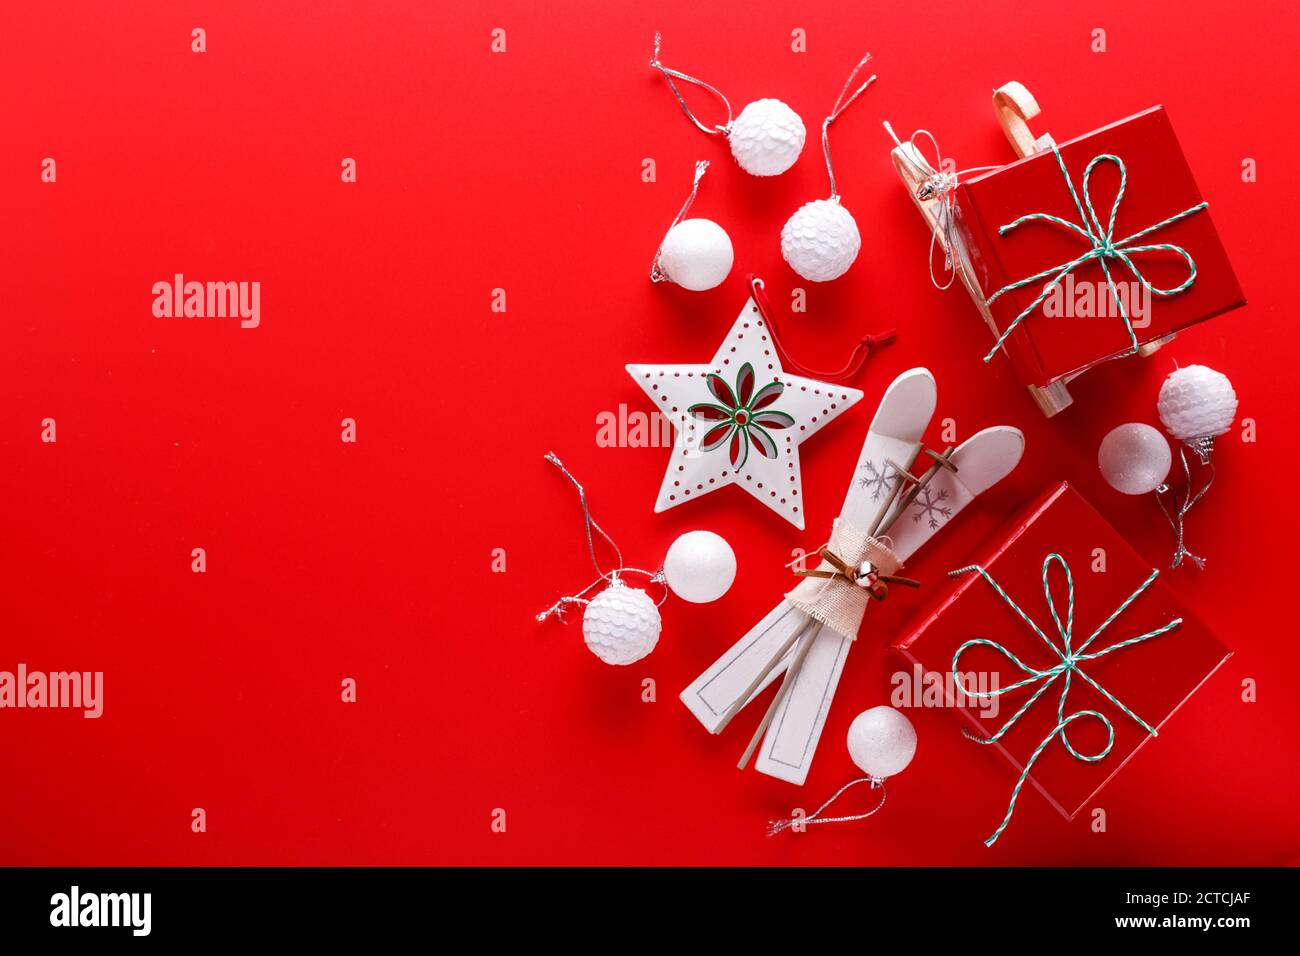 Draufsicht auf rotem Hintergrund mit roten Geschenkschachteln, Sternornamenten und kleinen Holzskiern und Schlitten für die Weihnachtsferien Stockfoto